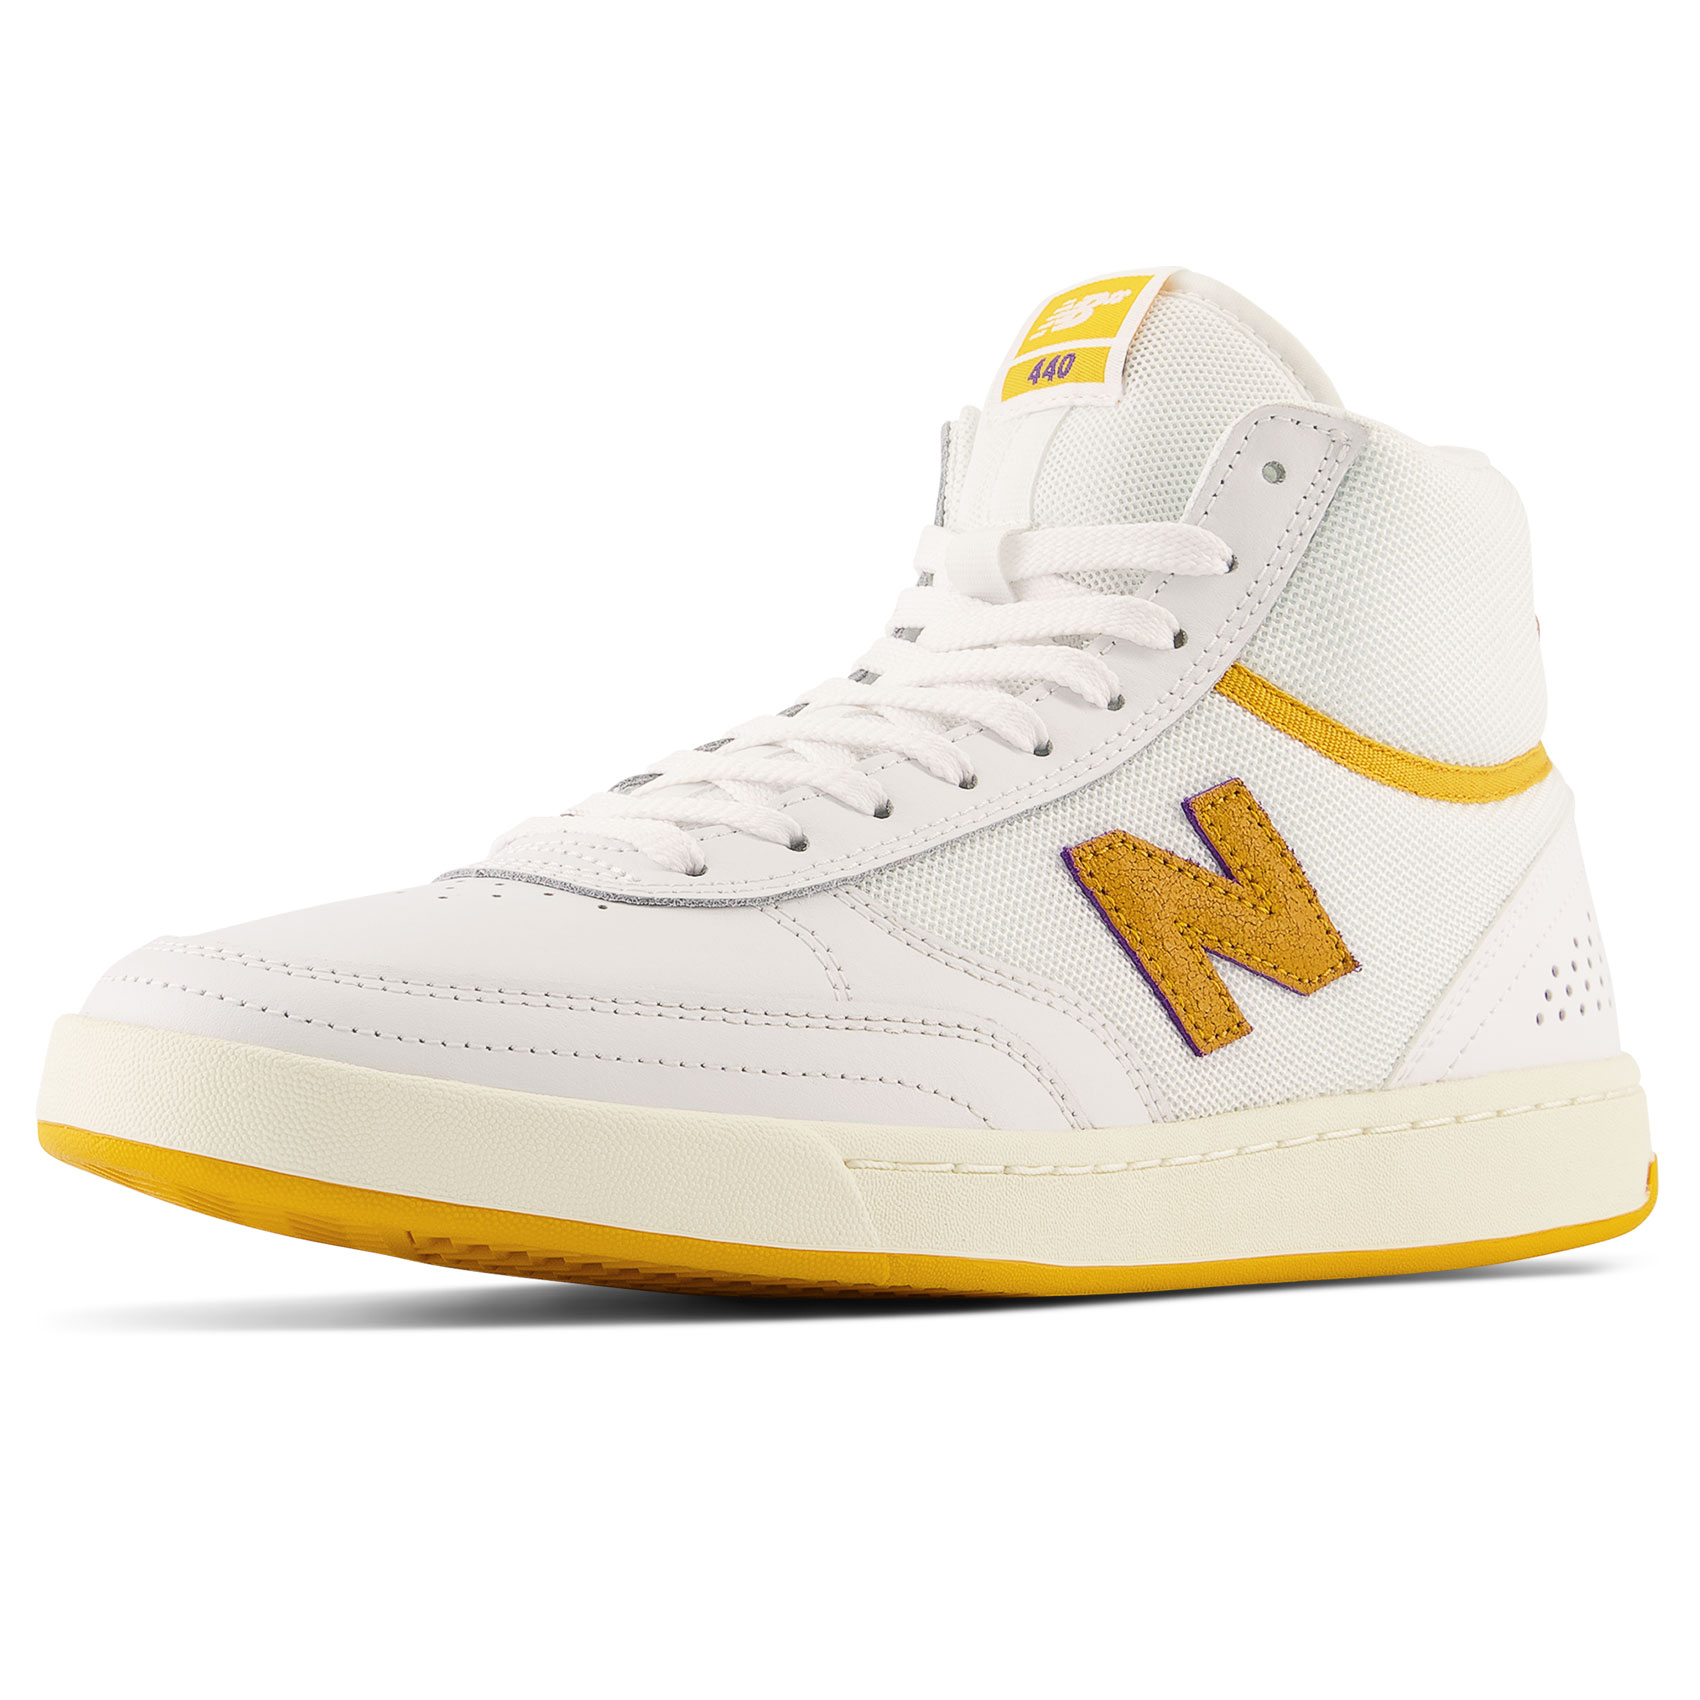 New Balance Numeric Schuhe 440 High (white yellow)